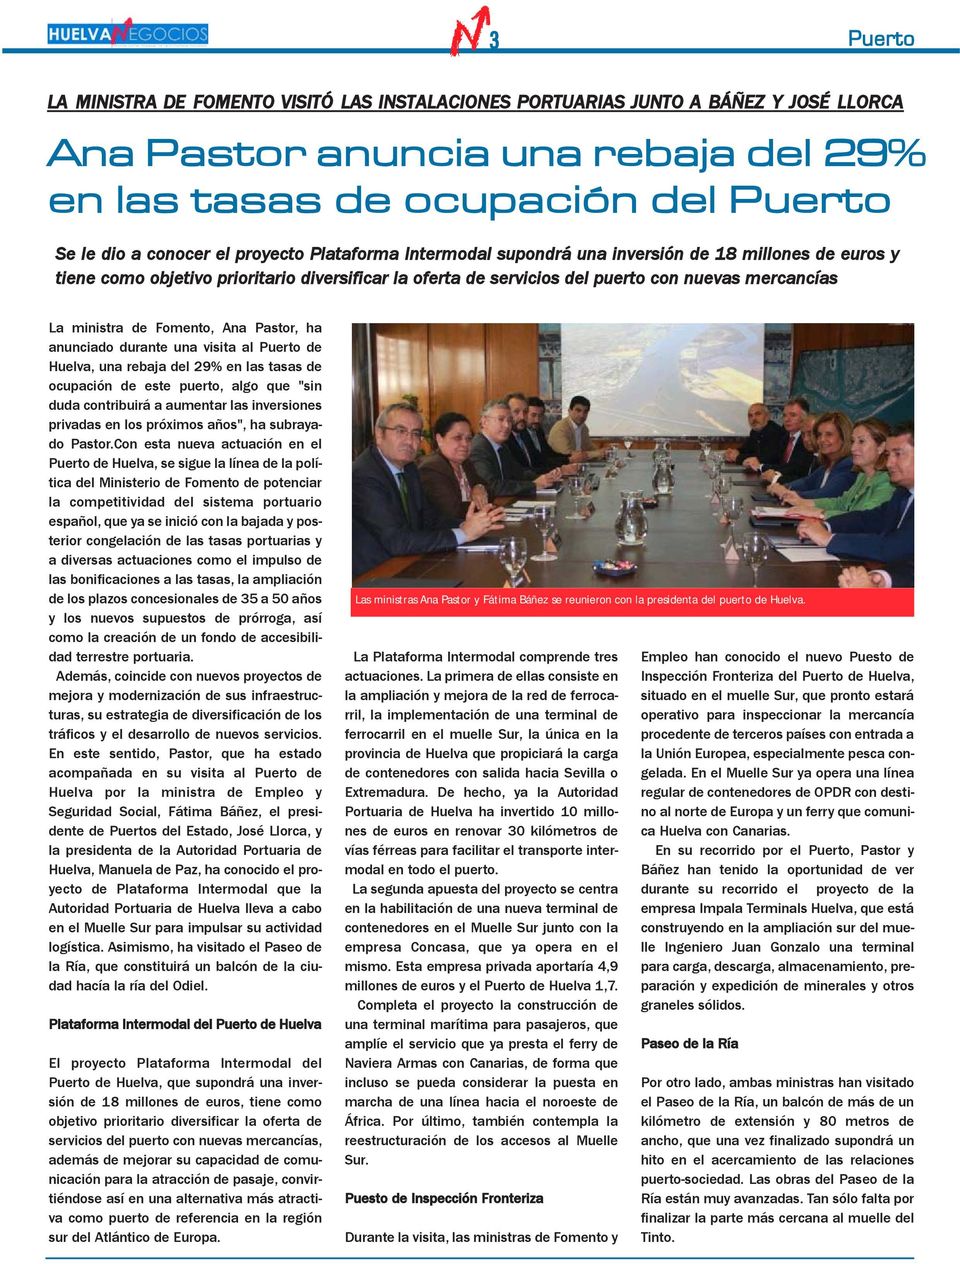 Fomento, Ana Pastor, ha anunciado durante una visita al Puerto de Huelva, una rebaja del 29% en las tasas de ocupación de este puerto, algo que "sin duda contribuirá a aumentar las inversiones